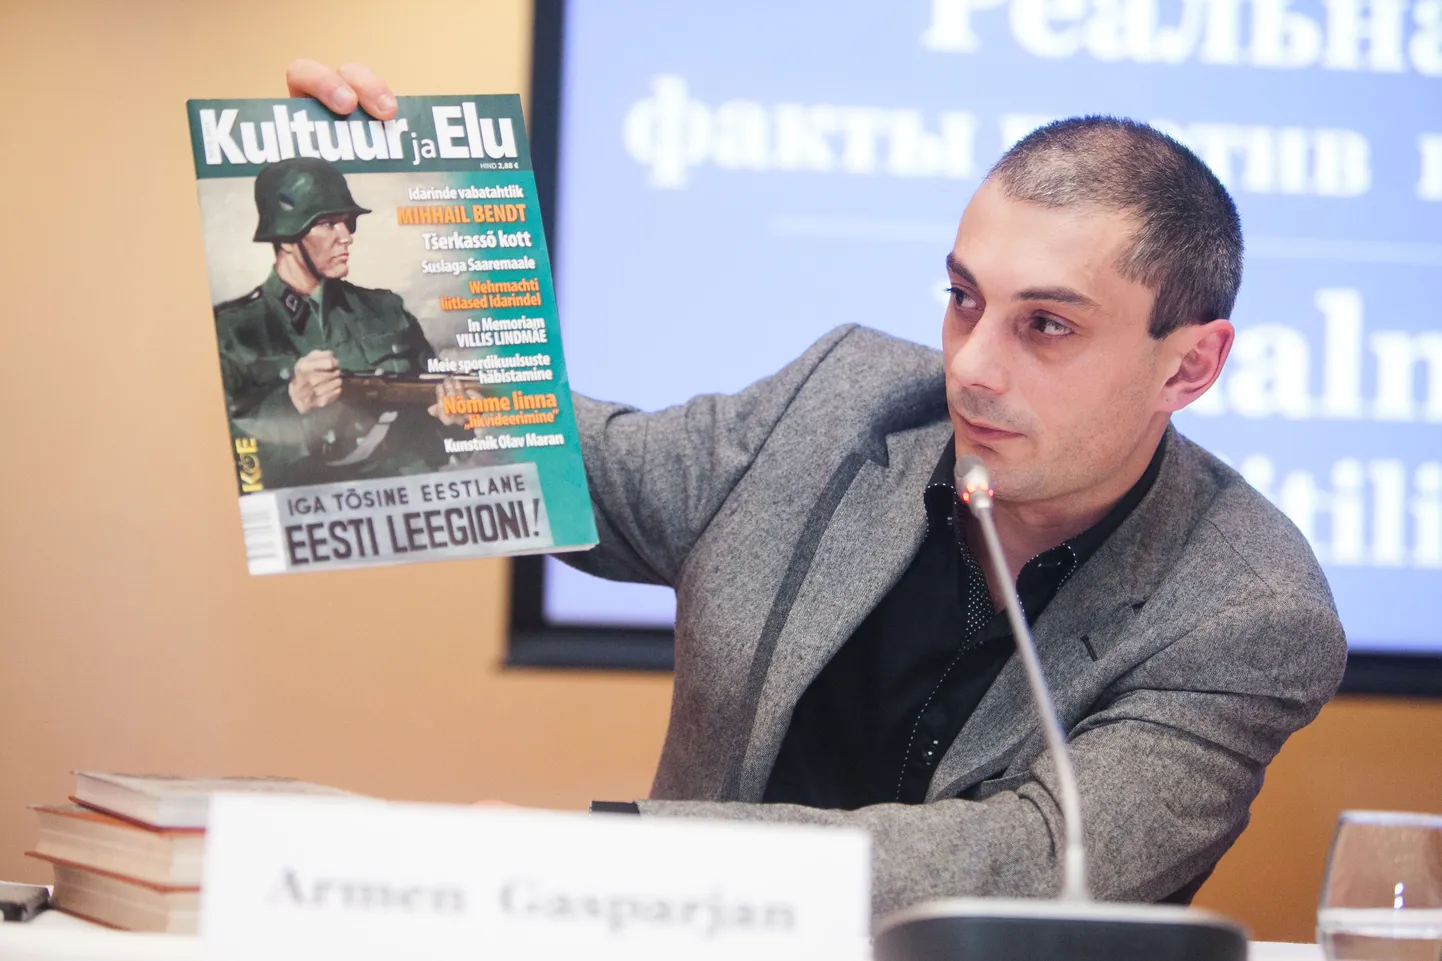 Армен Гаспарян возмущается героизацией войск СС в Эстонии: нацизм проник даже в журнал «Культура и жизнь»!